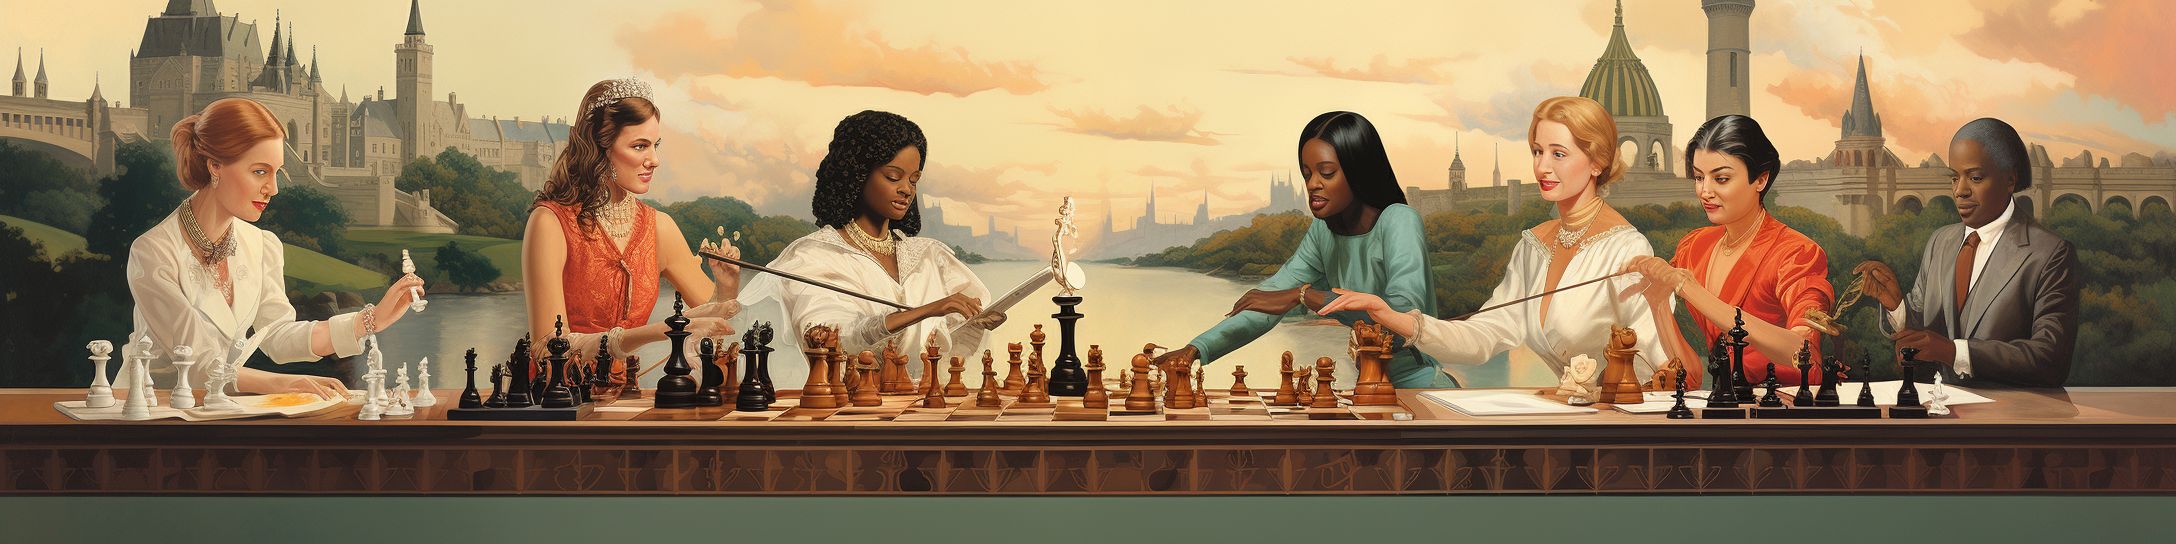 L'historique des dames dans les échecs